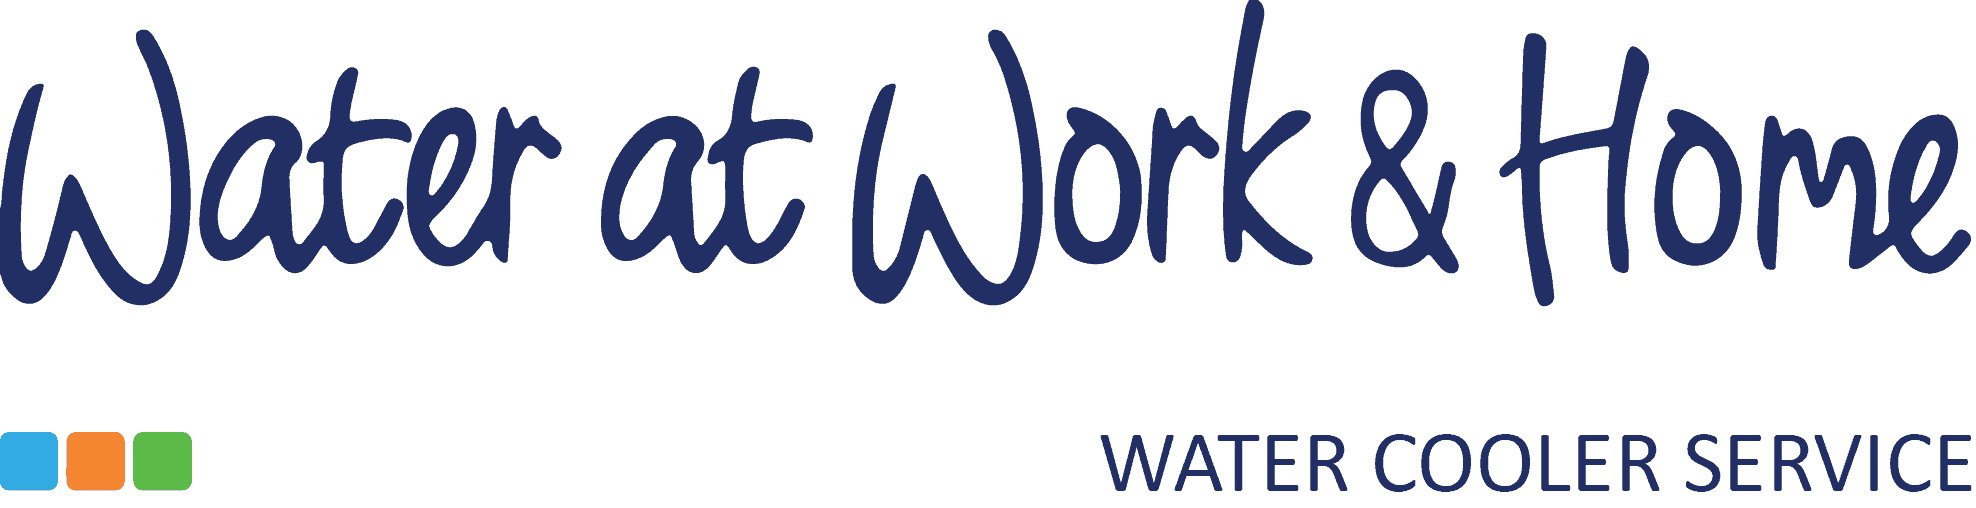 Water at Work logo